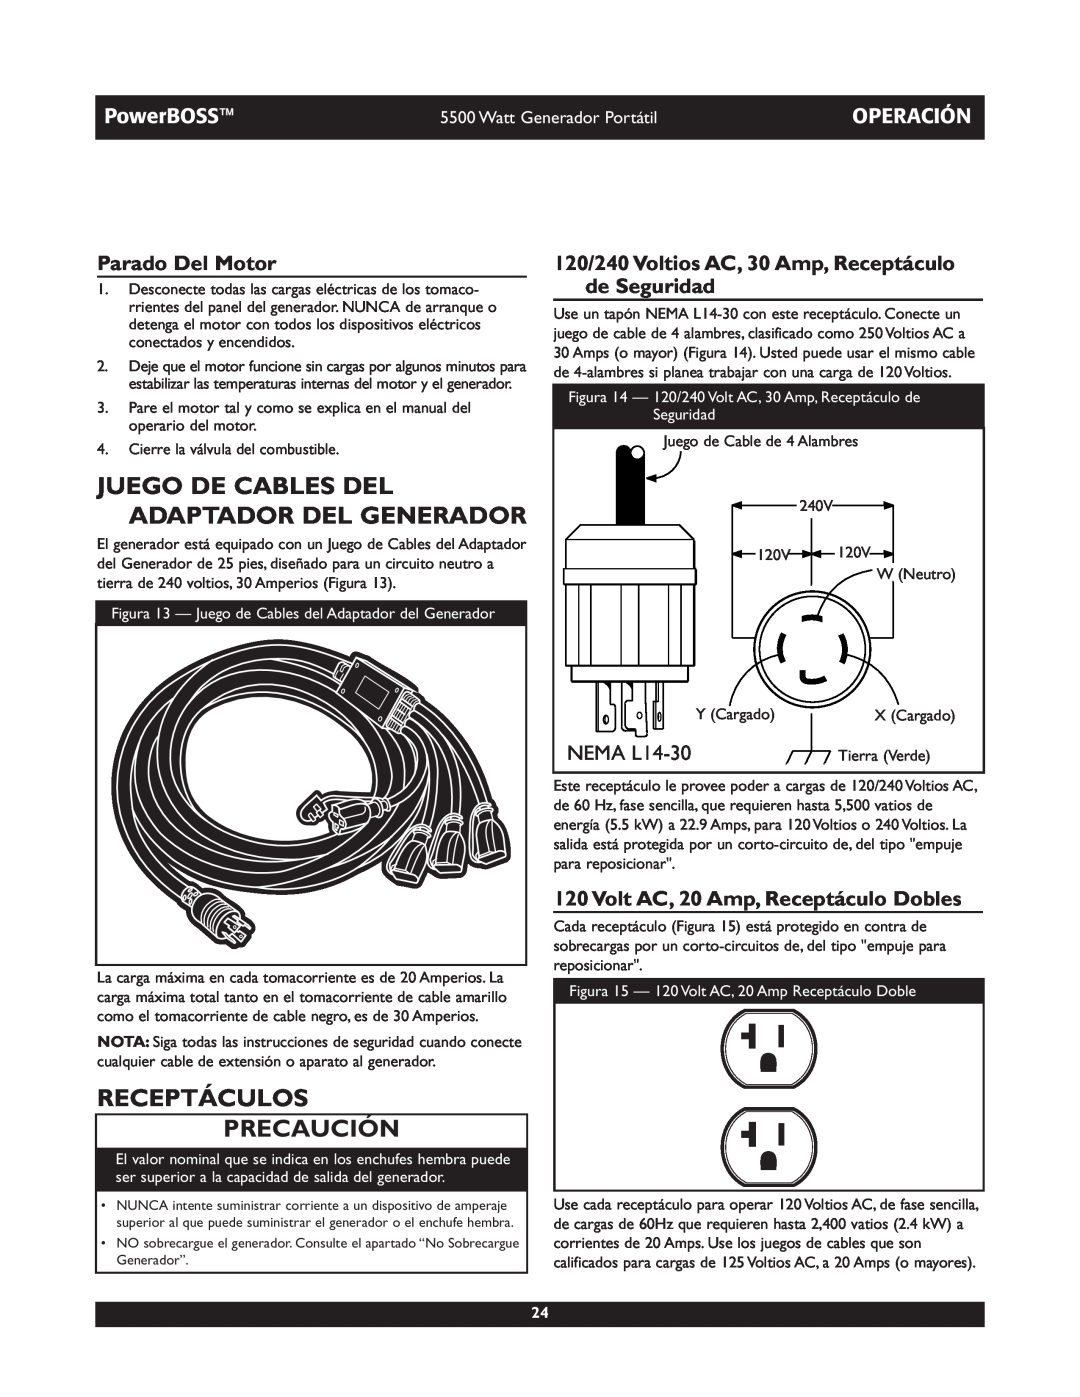 Briggs & Stratton 030249 Juego De Cables Del Adaptador Del Generador, Receptáculos Precaución, Parado Del Motor, PowerBOSS 